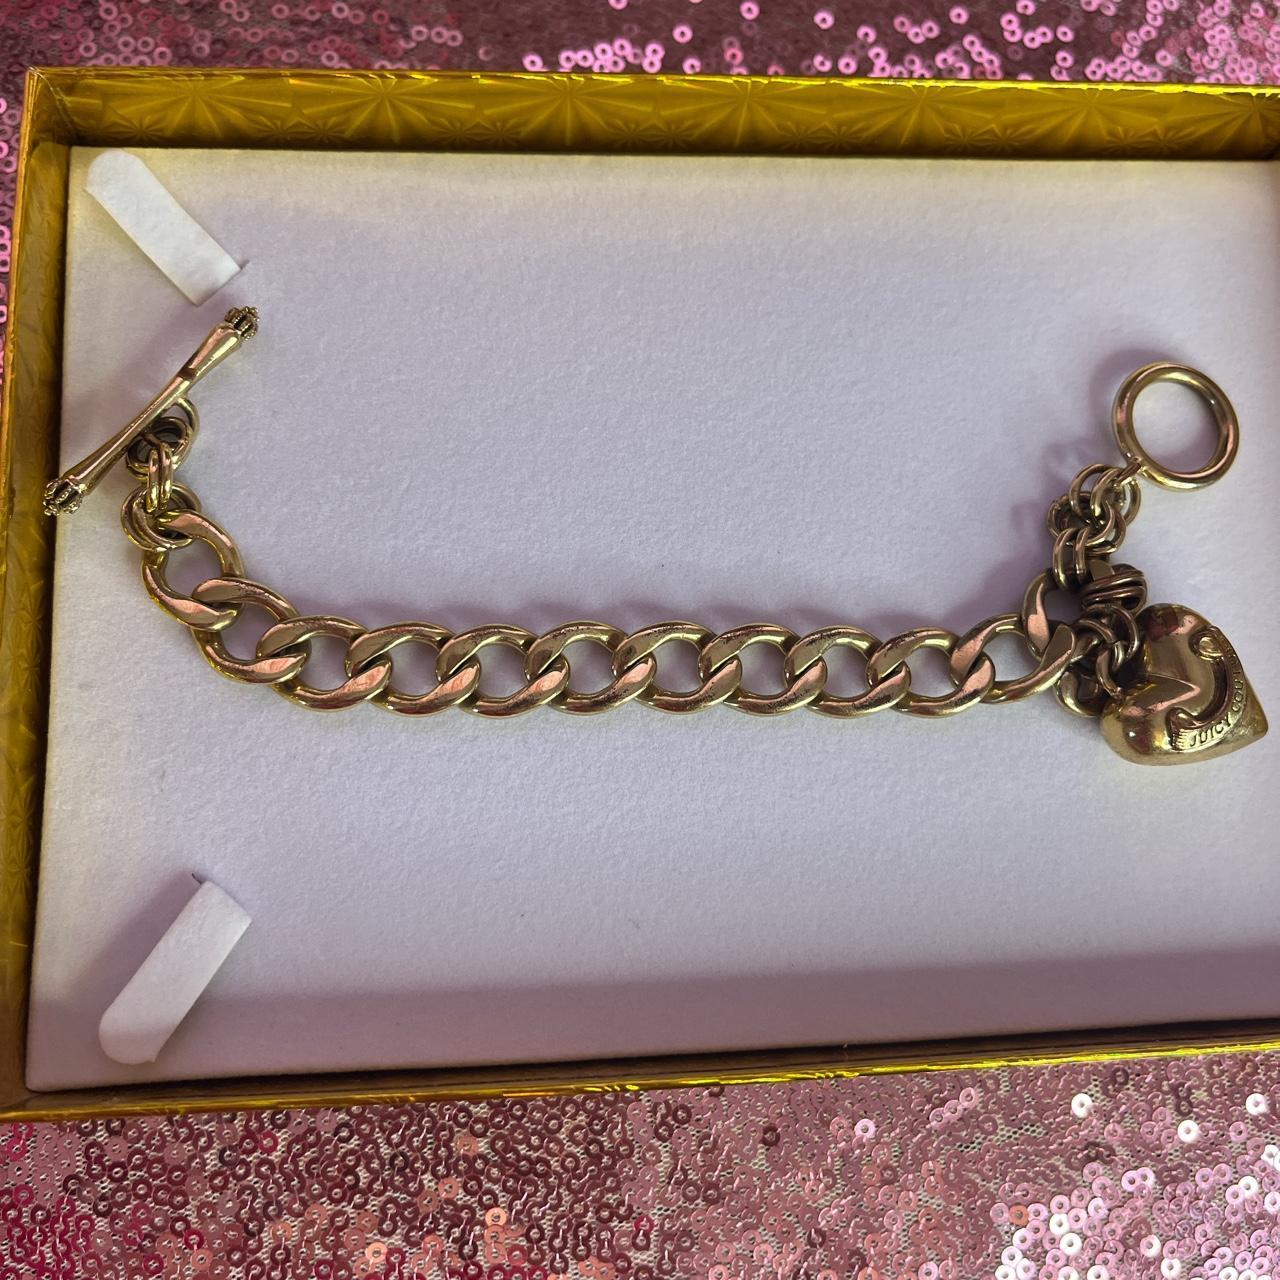 Juicy couture gold bracelet Vintage ✨ Has - Depop